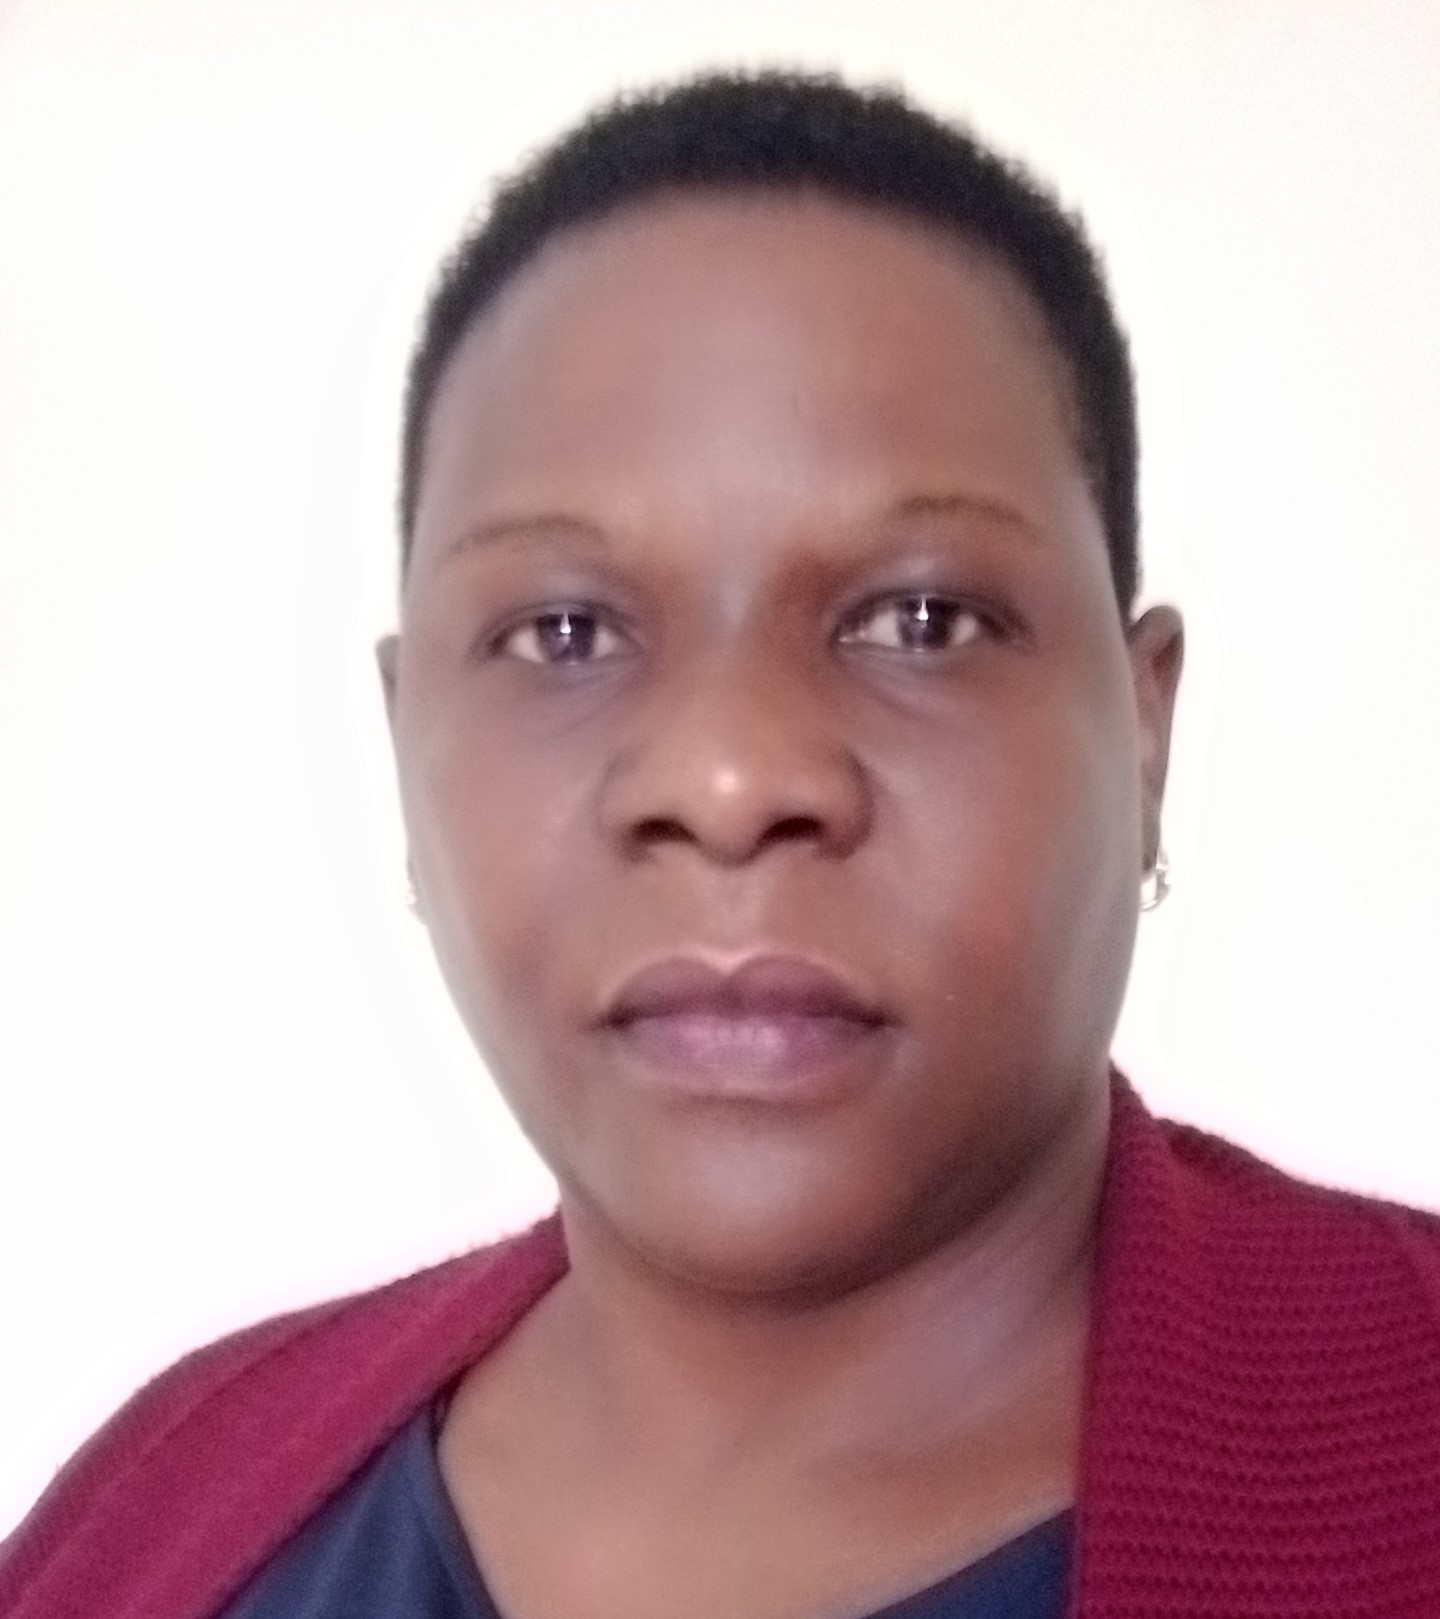 Profile of Akullu Mirriam